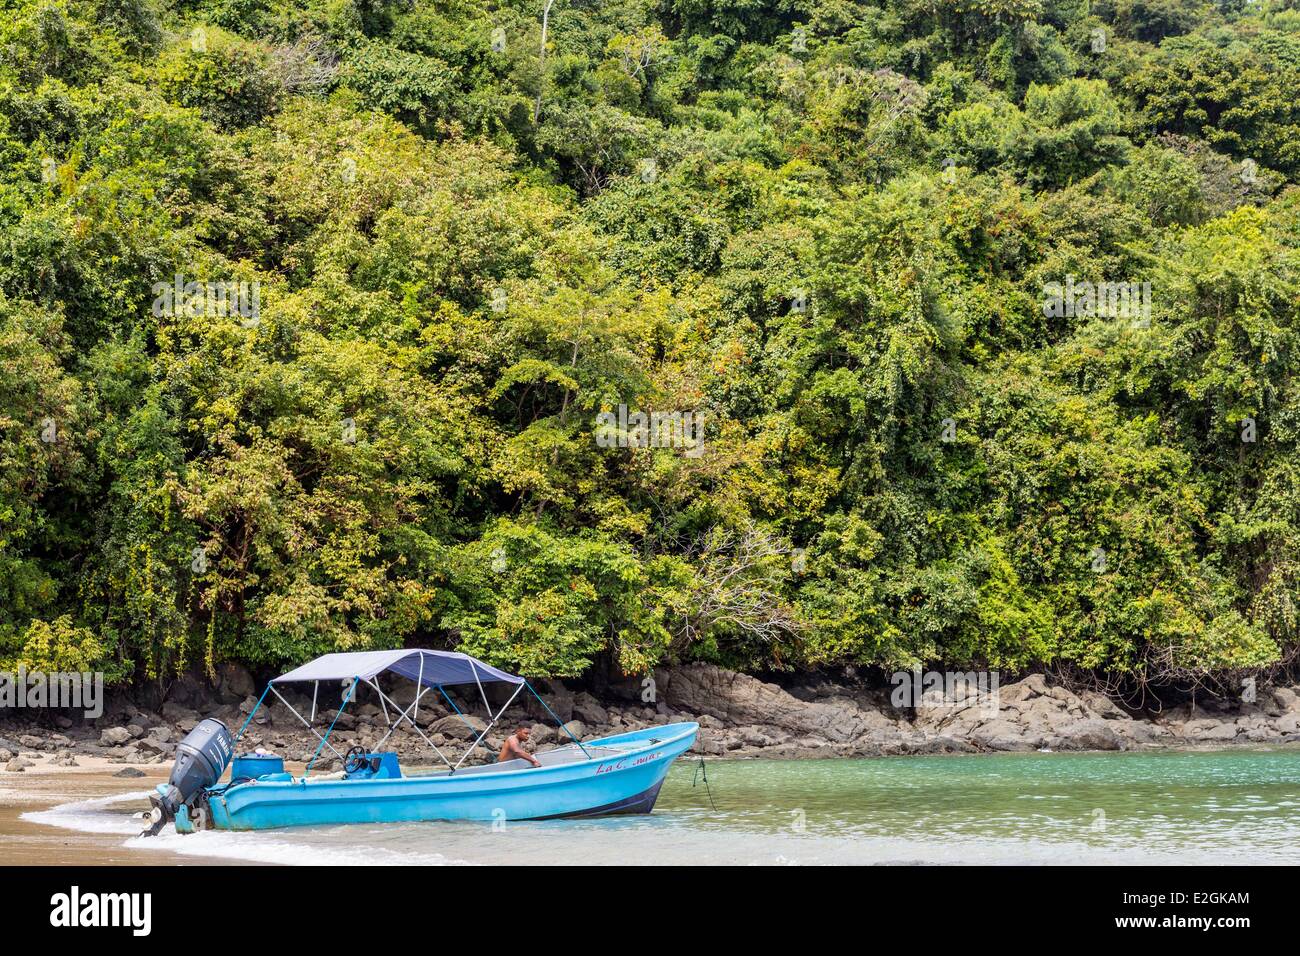 Panama Veraguas Provinz Golf von Chiriquí Nationalpark Coiba als Weltkulturerbe der UNESCO gelistet, seit 2005 Coiba Insel Strand Stockfoto